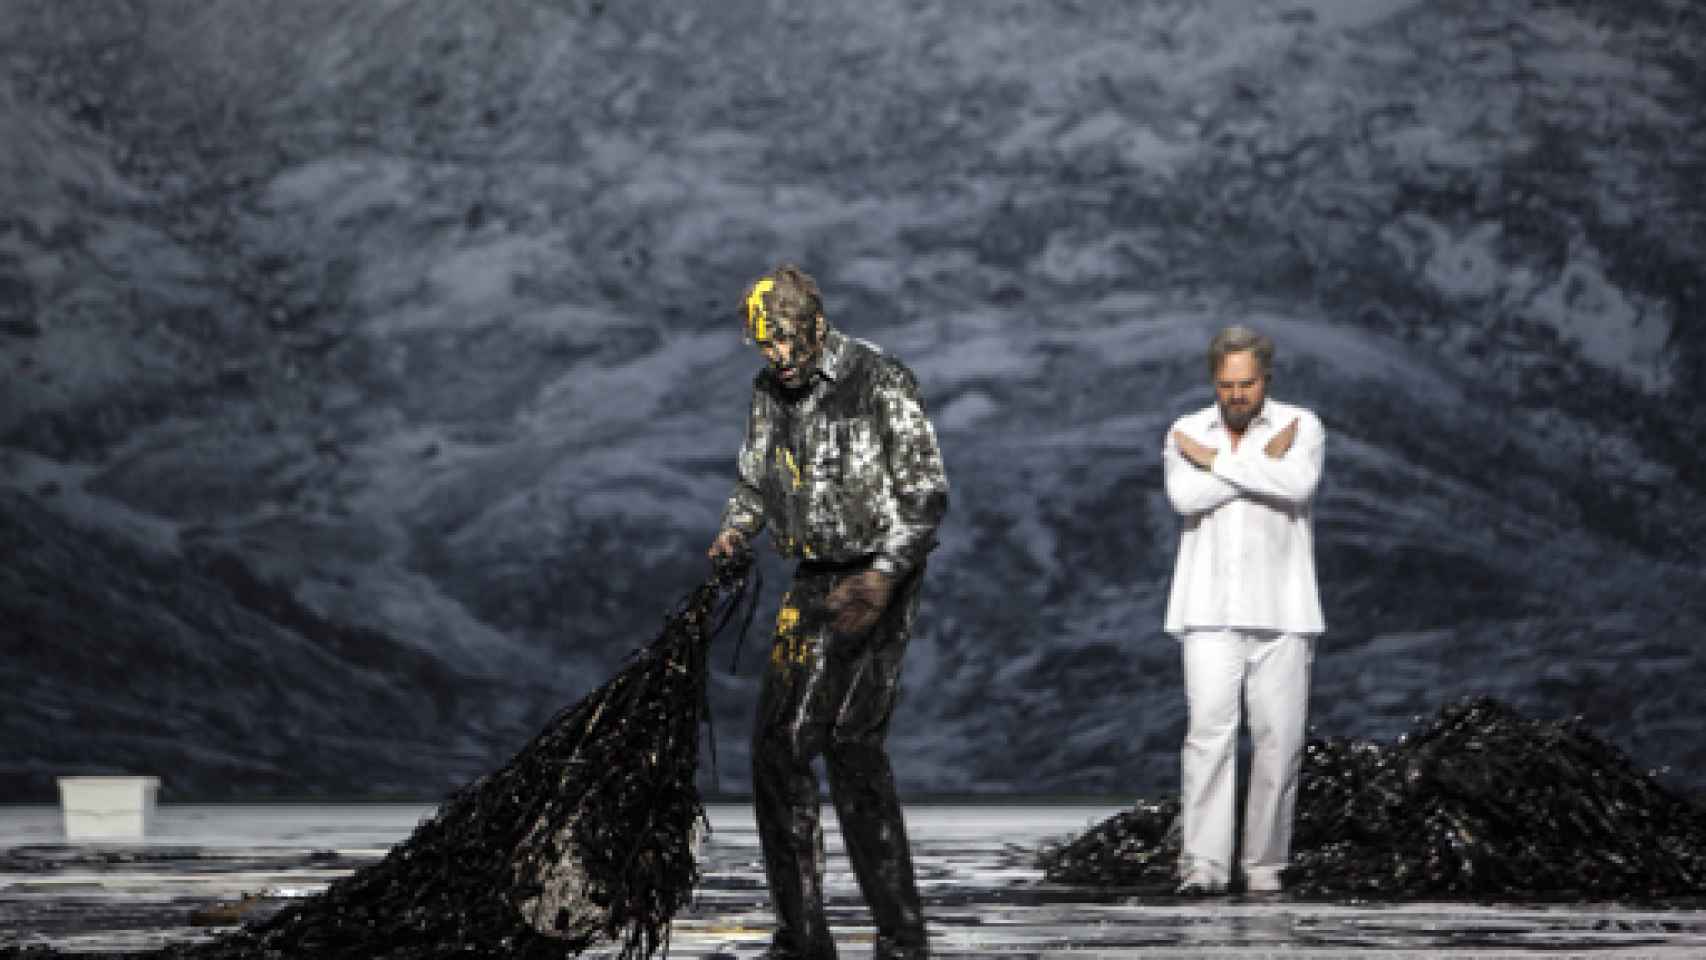 Image: La ópera desciende al infierno del Holocausto